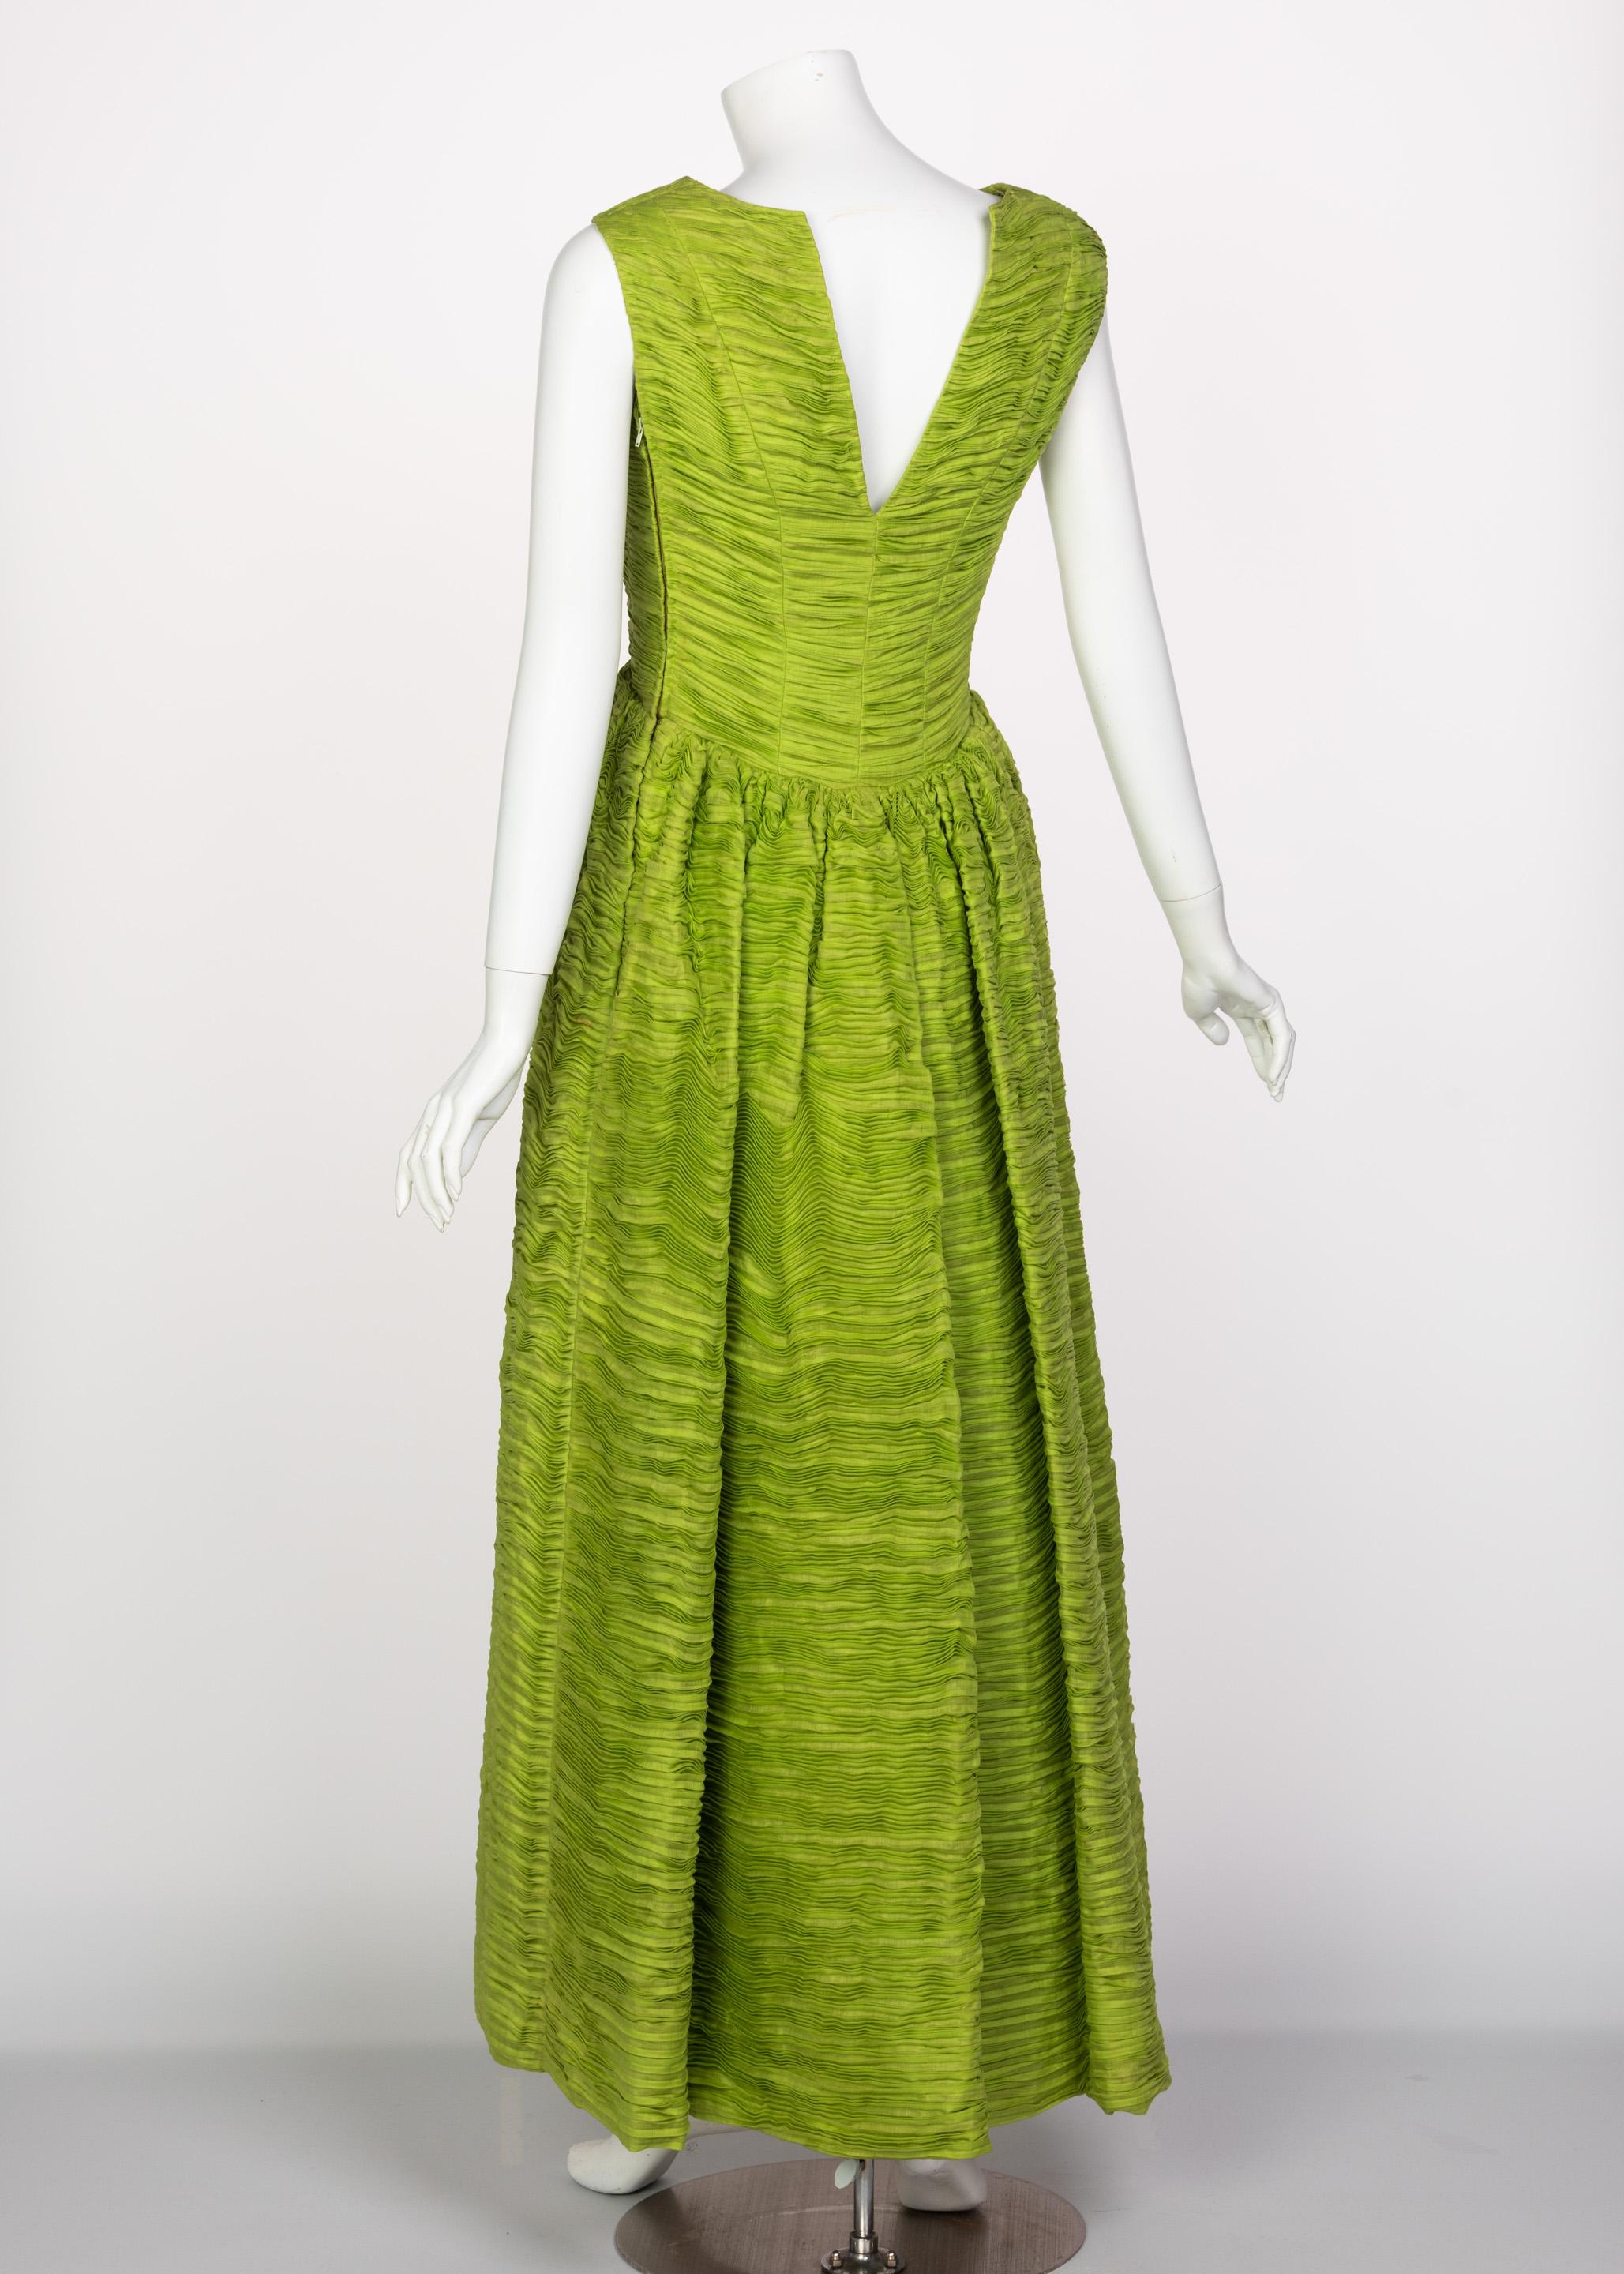 Sybil Connolly Couture, robe en lin plissé vert, années 60 Excellent état - En vente à Boca Raton, FL